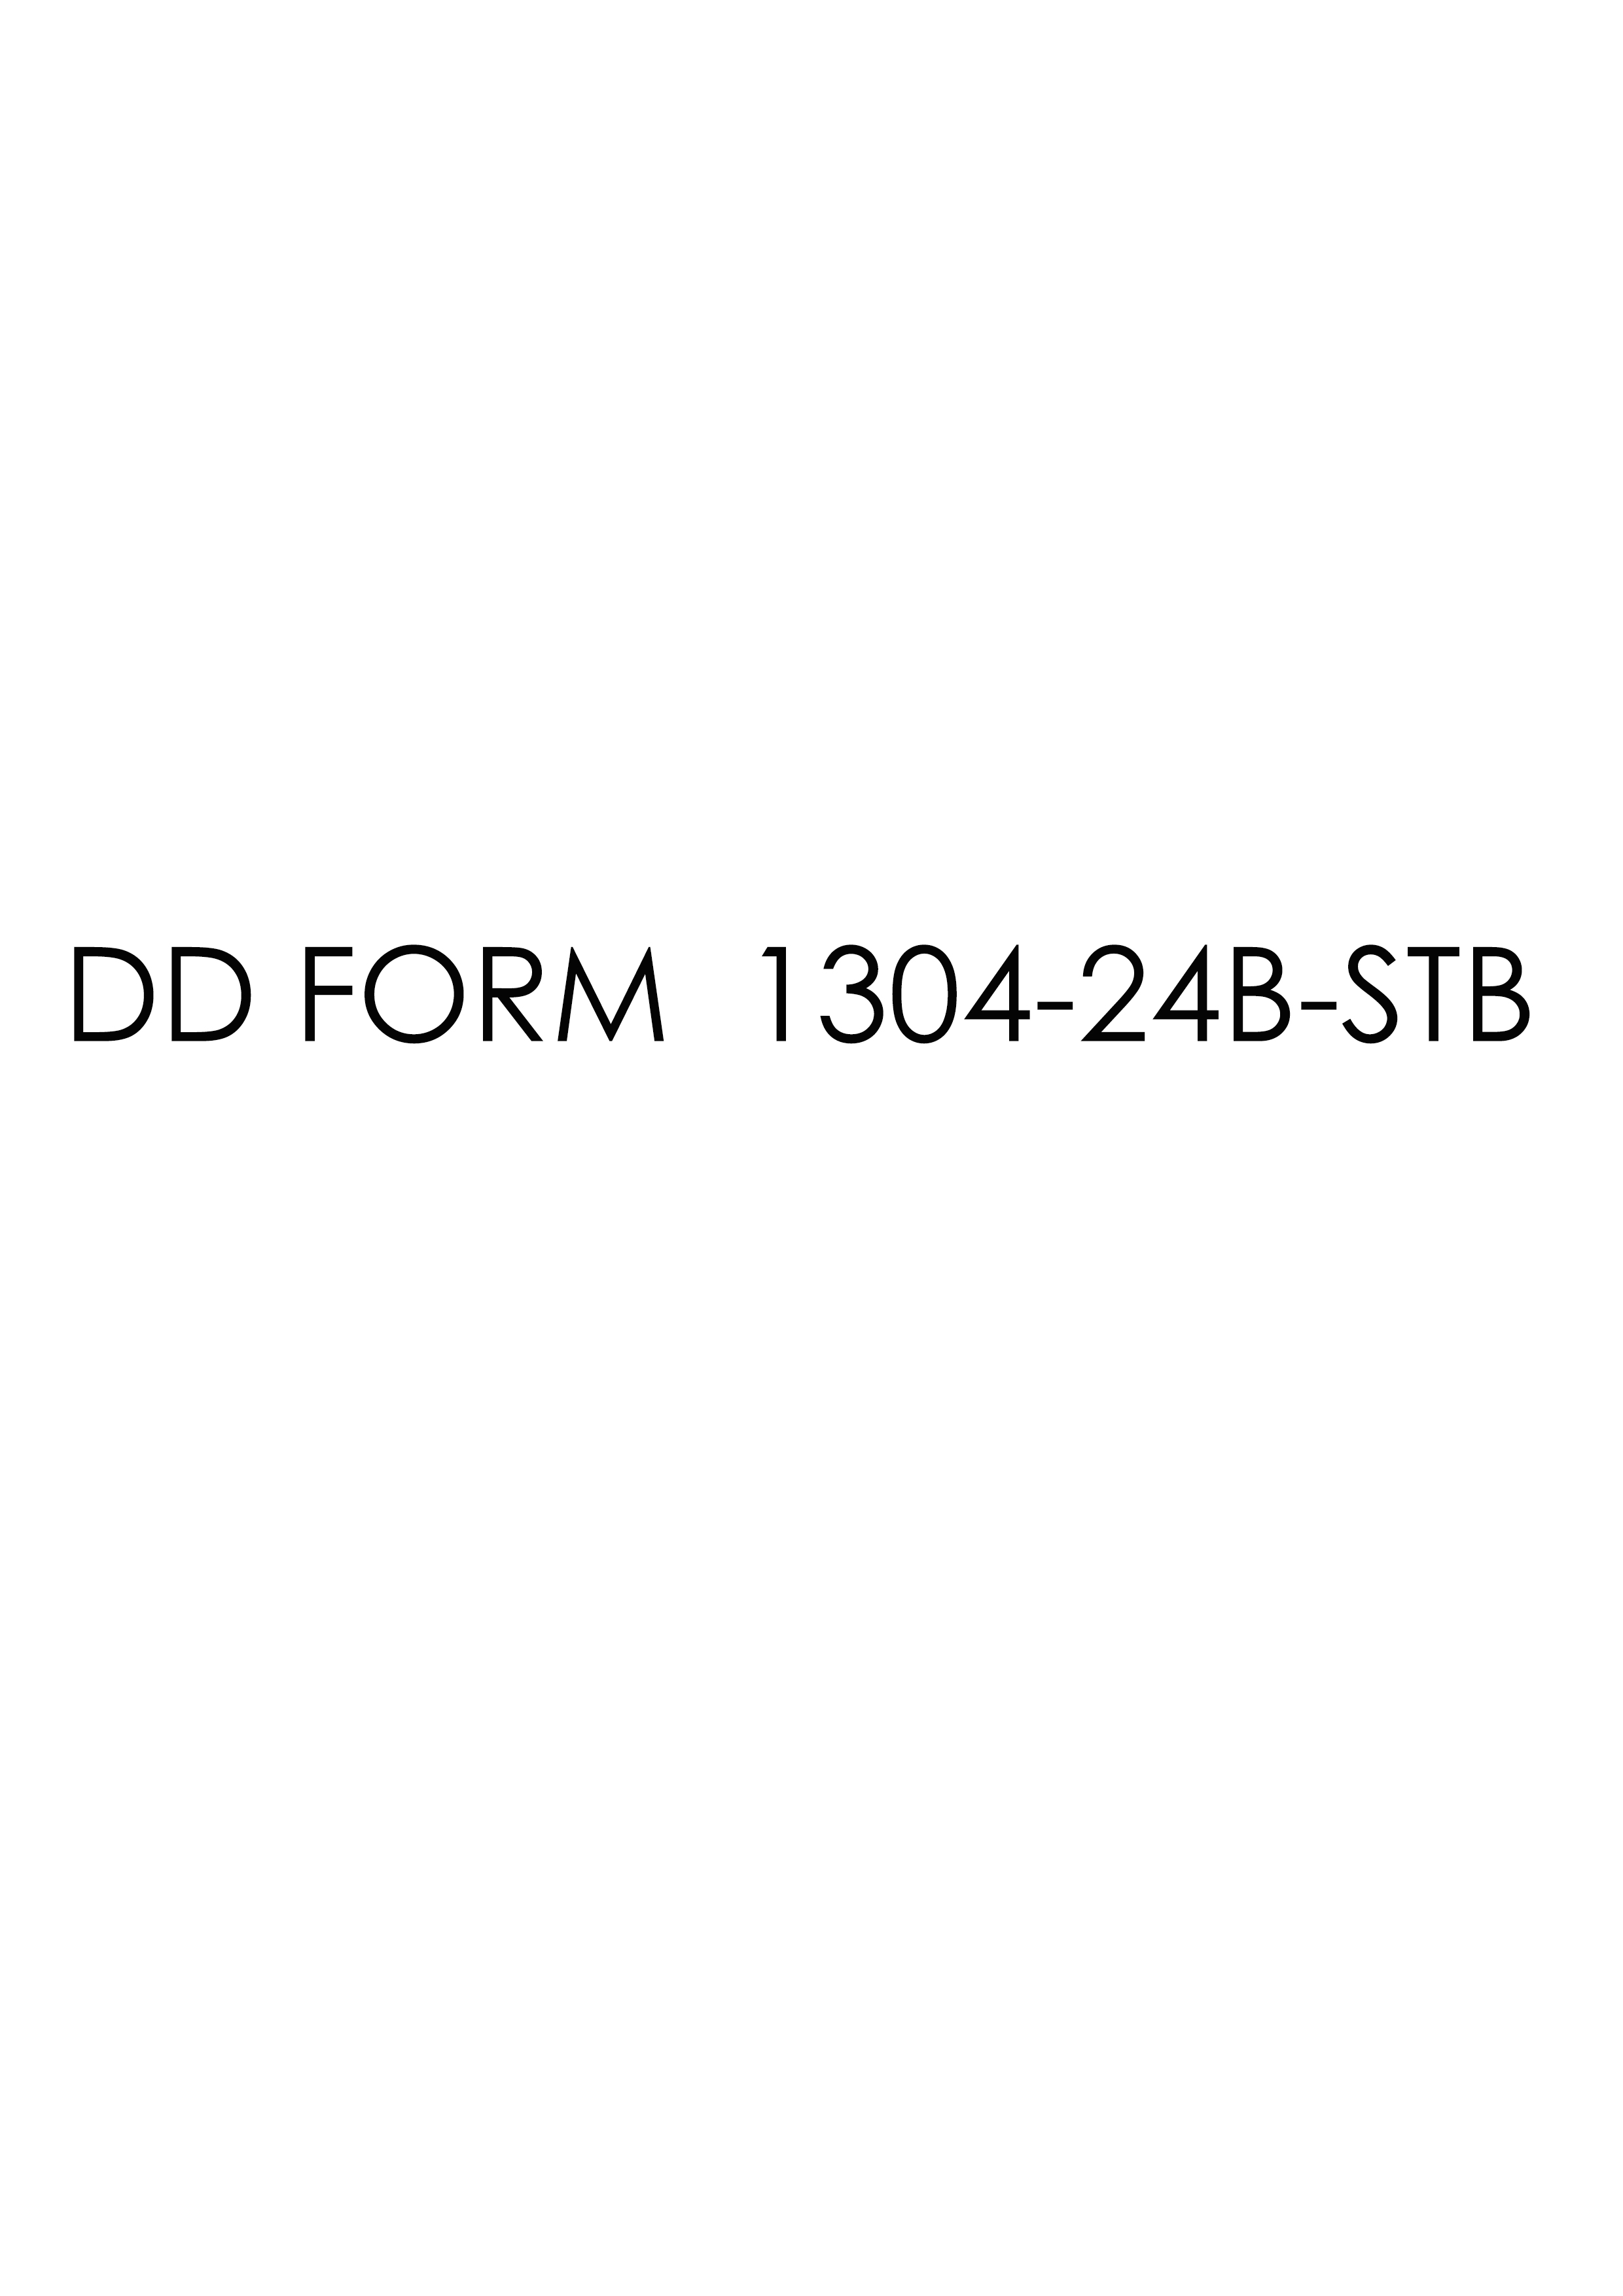 Download dd Form 1304-24B-STB